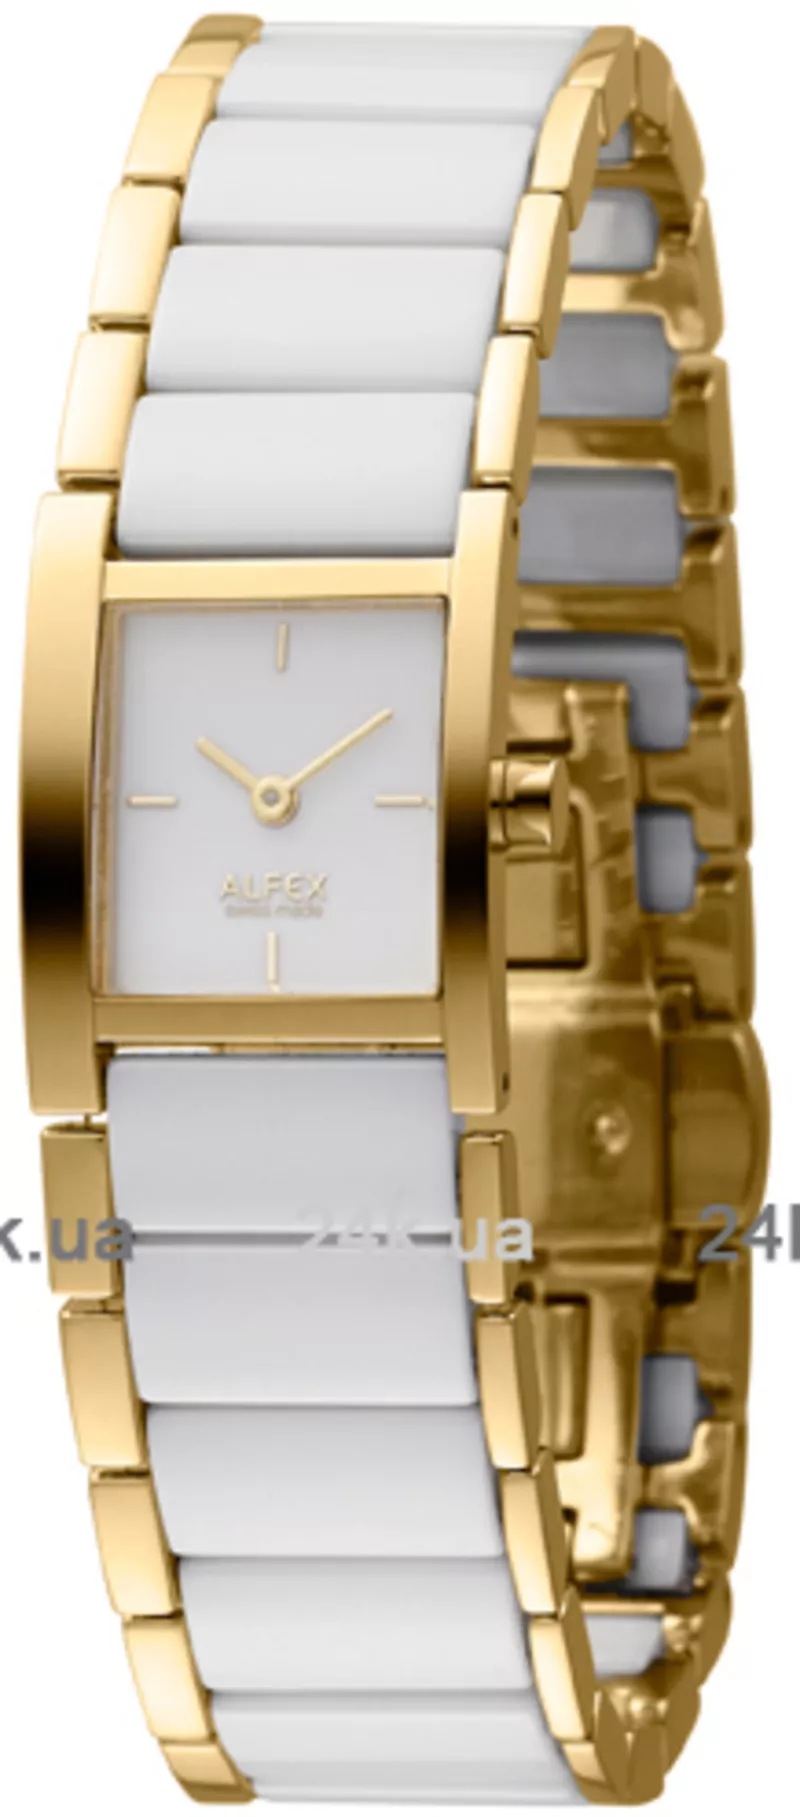 Часы Alfex 5738/907